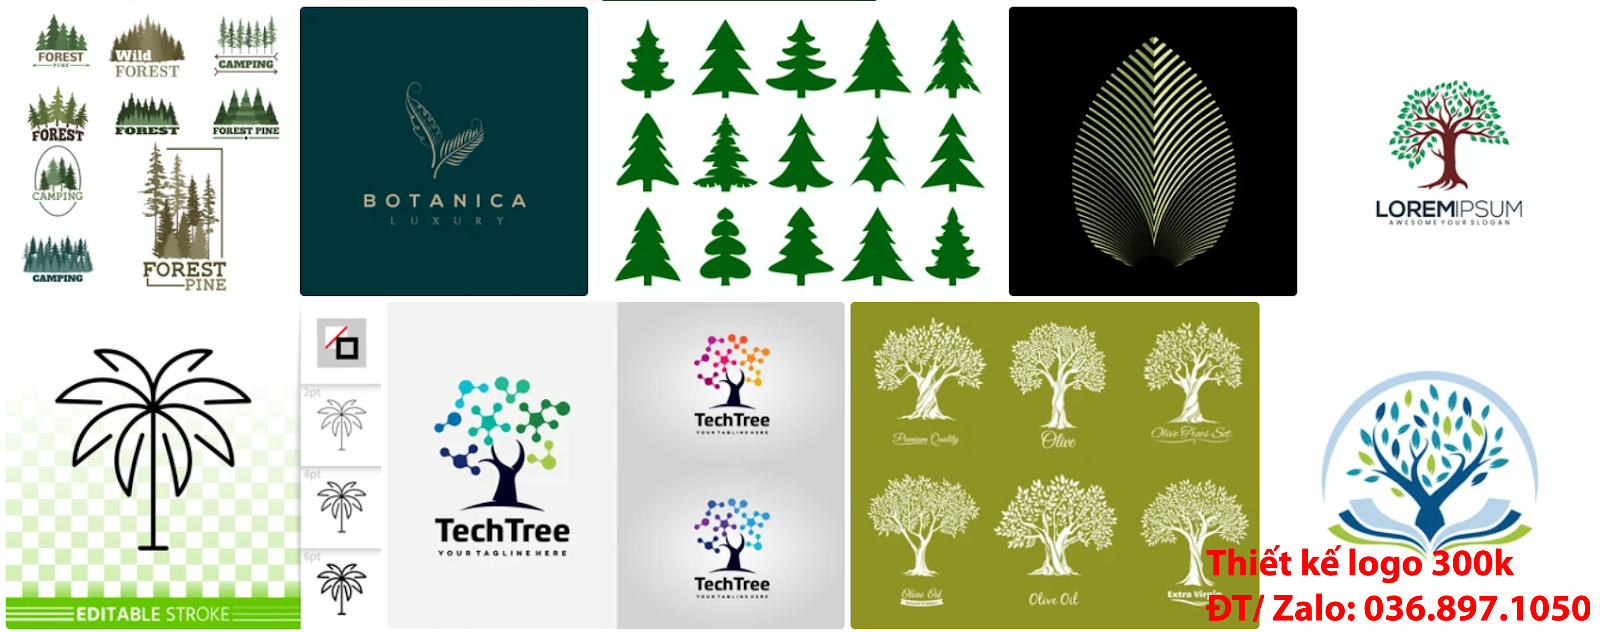 Công ty cung cấp dịch vụ mẫu logo cây xanh chuyên nghiệp giá rẻ 300k - 500k chất lượng